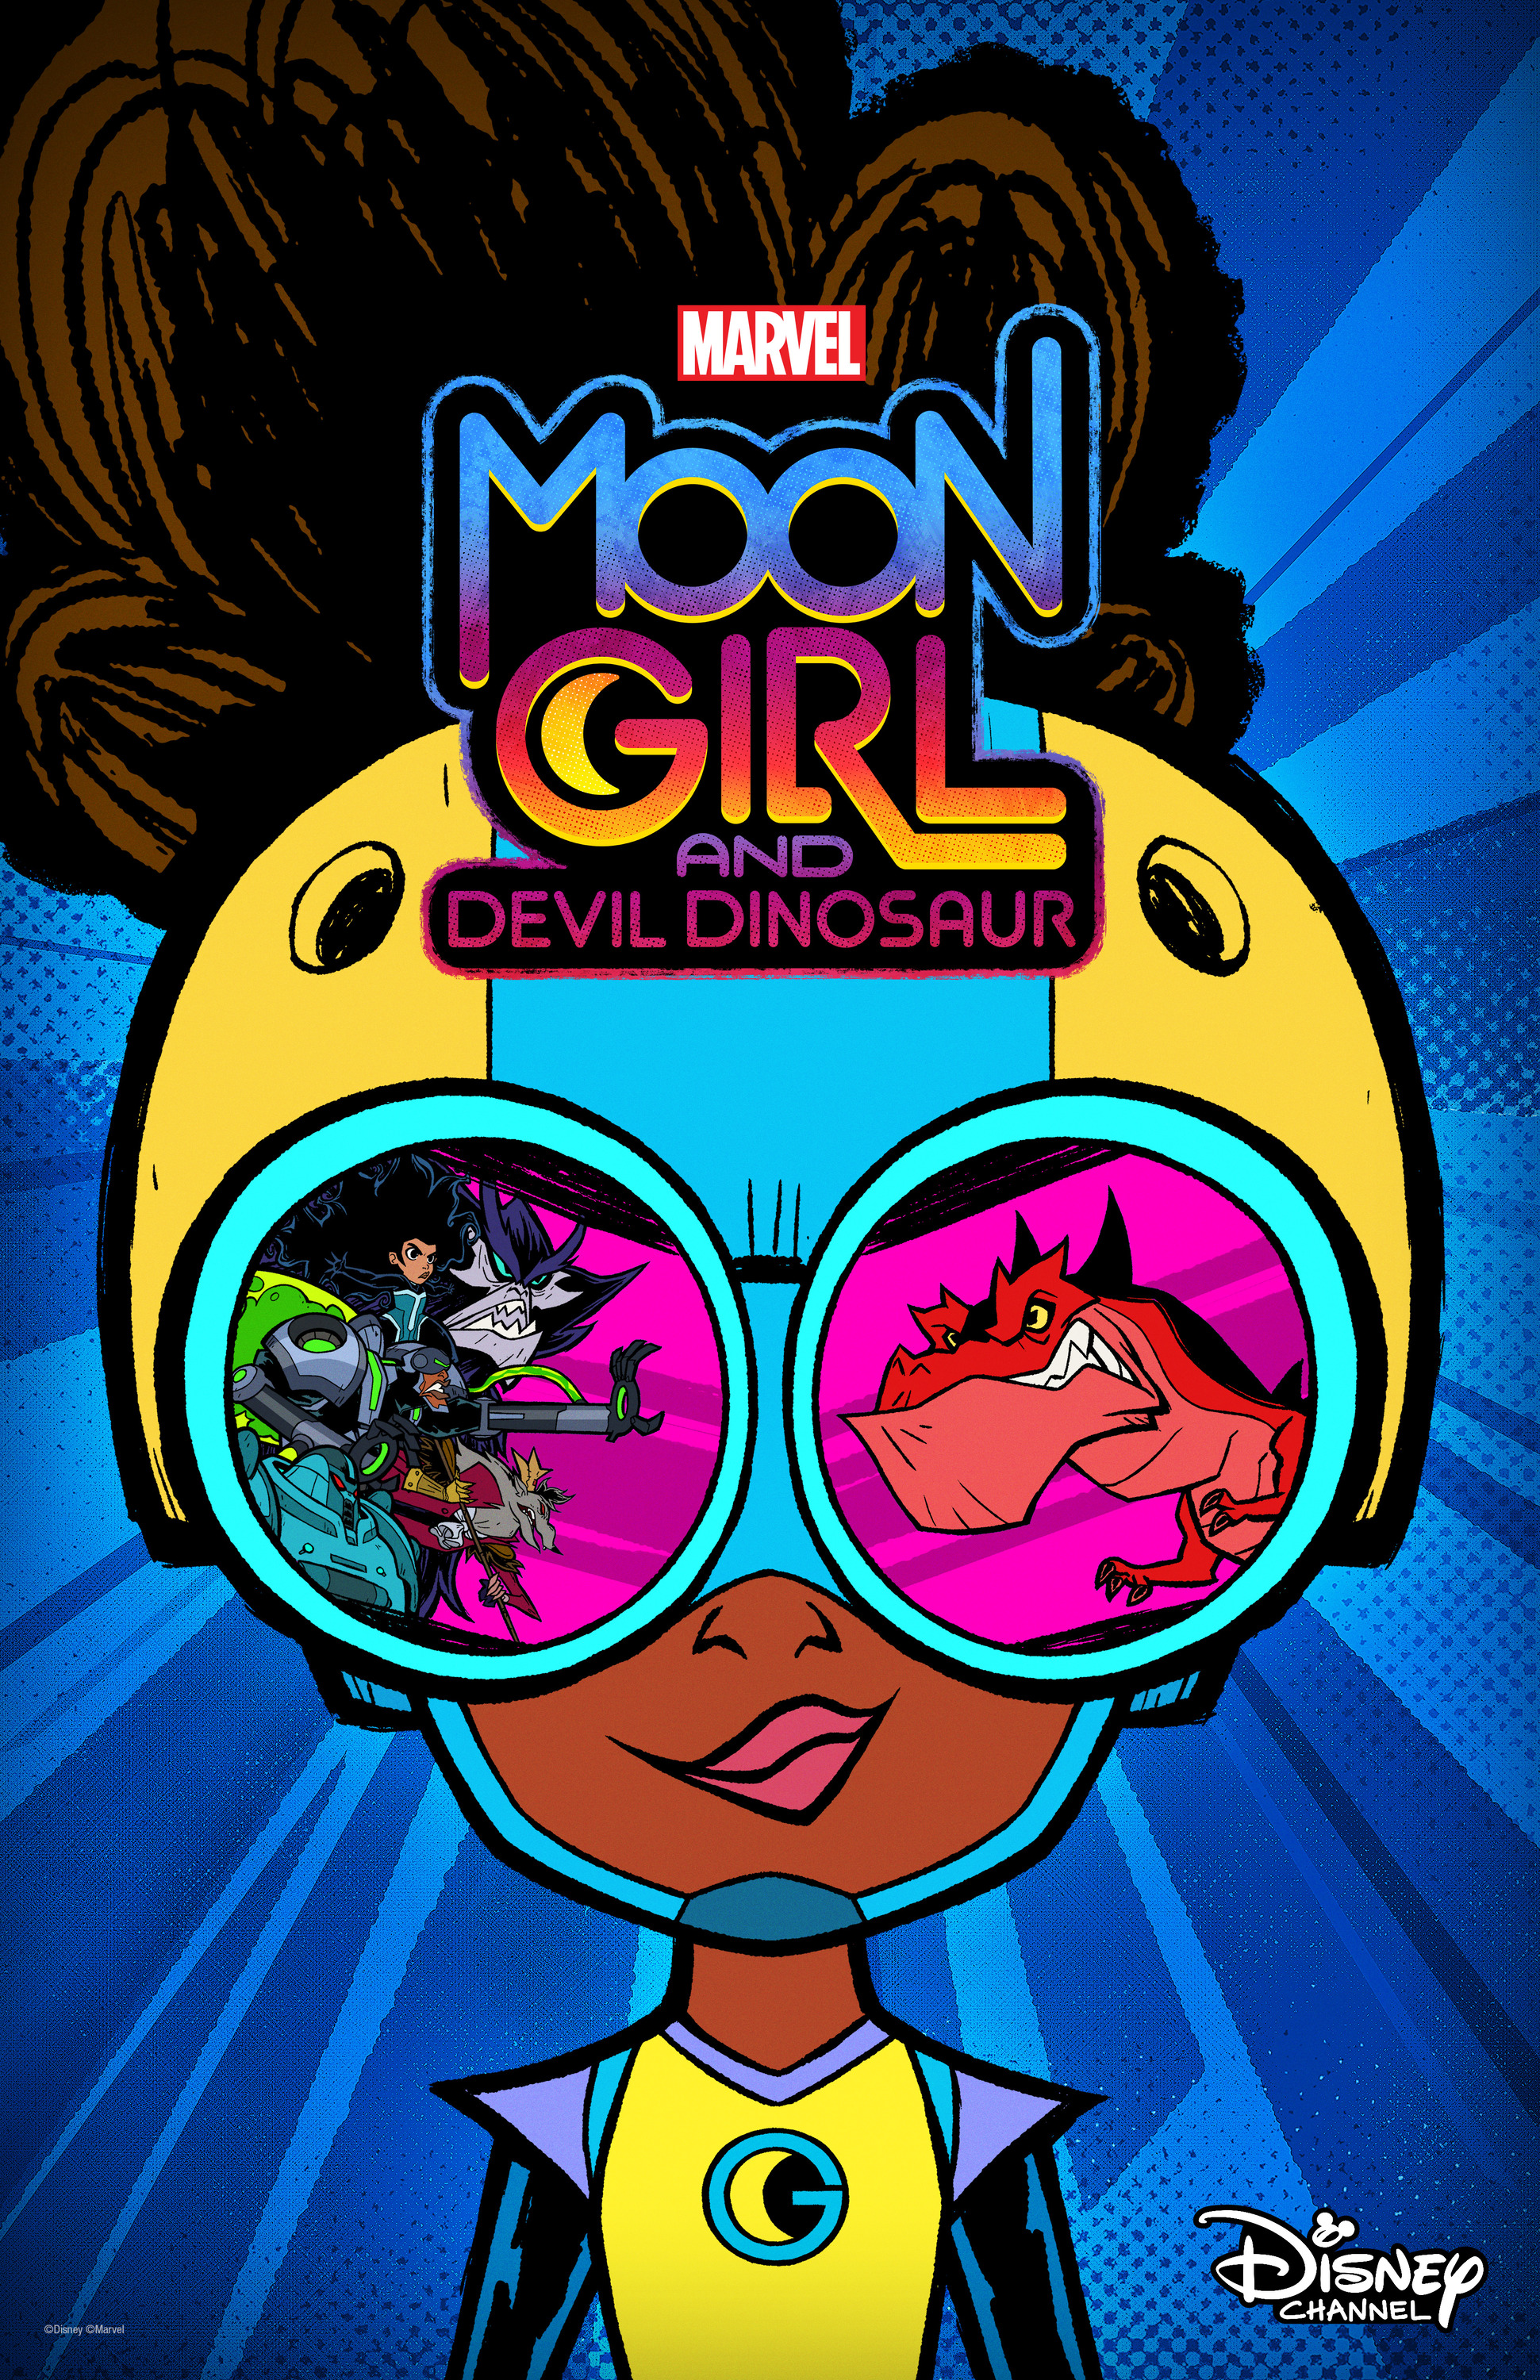 Mega Sized TV Poster Image for Marvel's Moon Girl and Devil Dinosaur (#1 of 7)